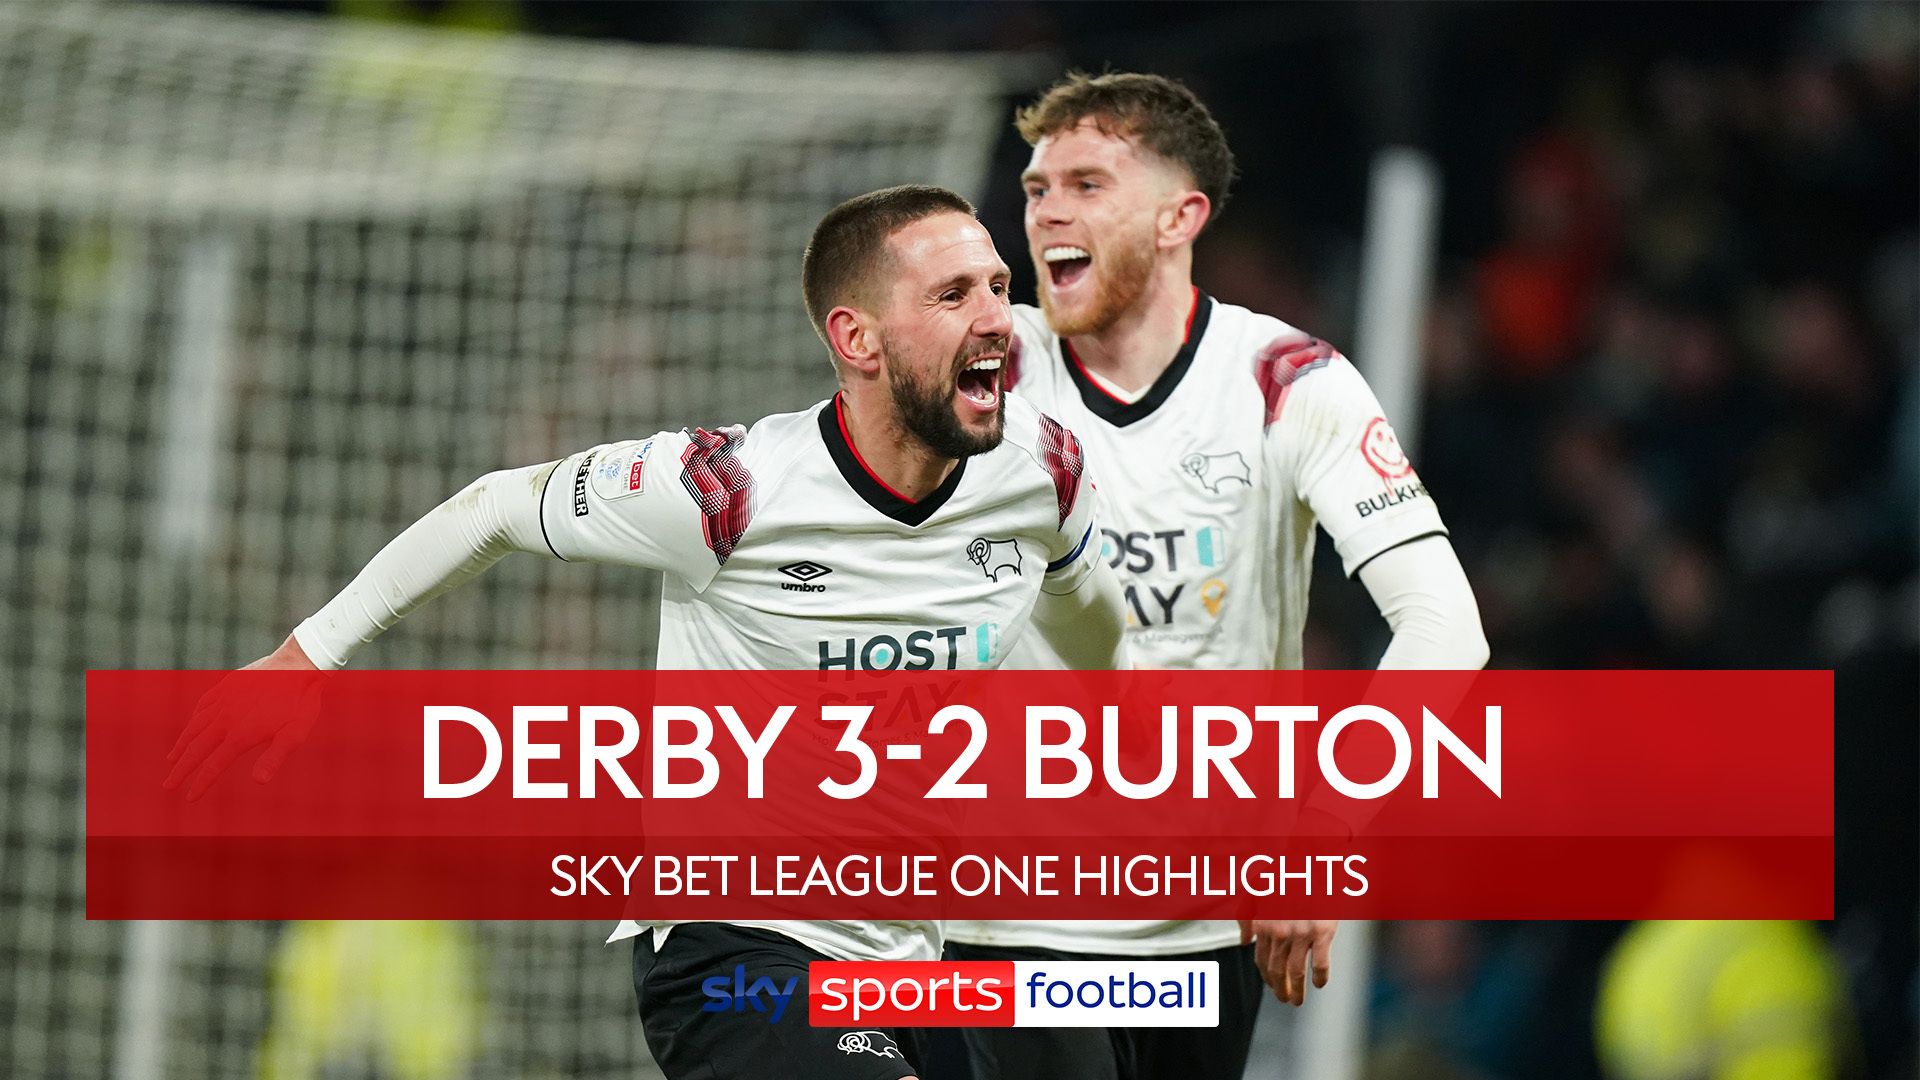 Derby 3-2 Burton